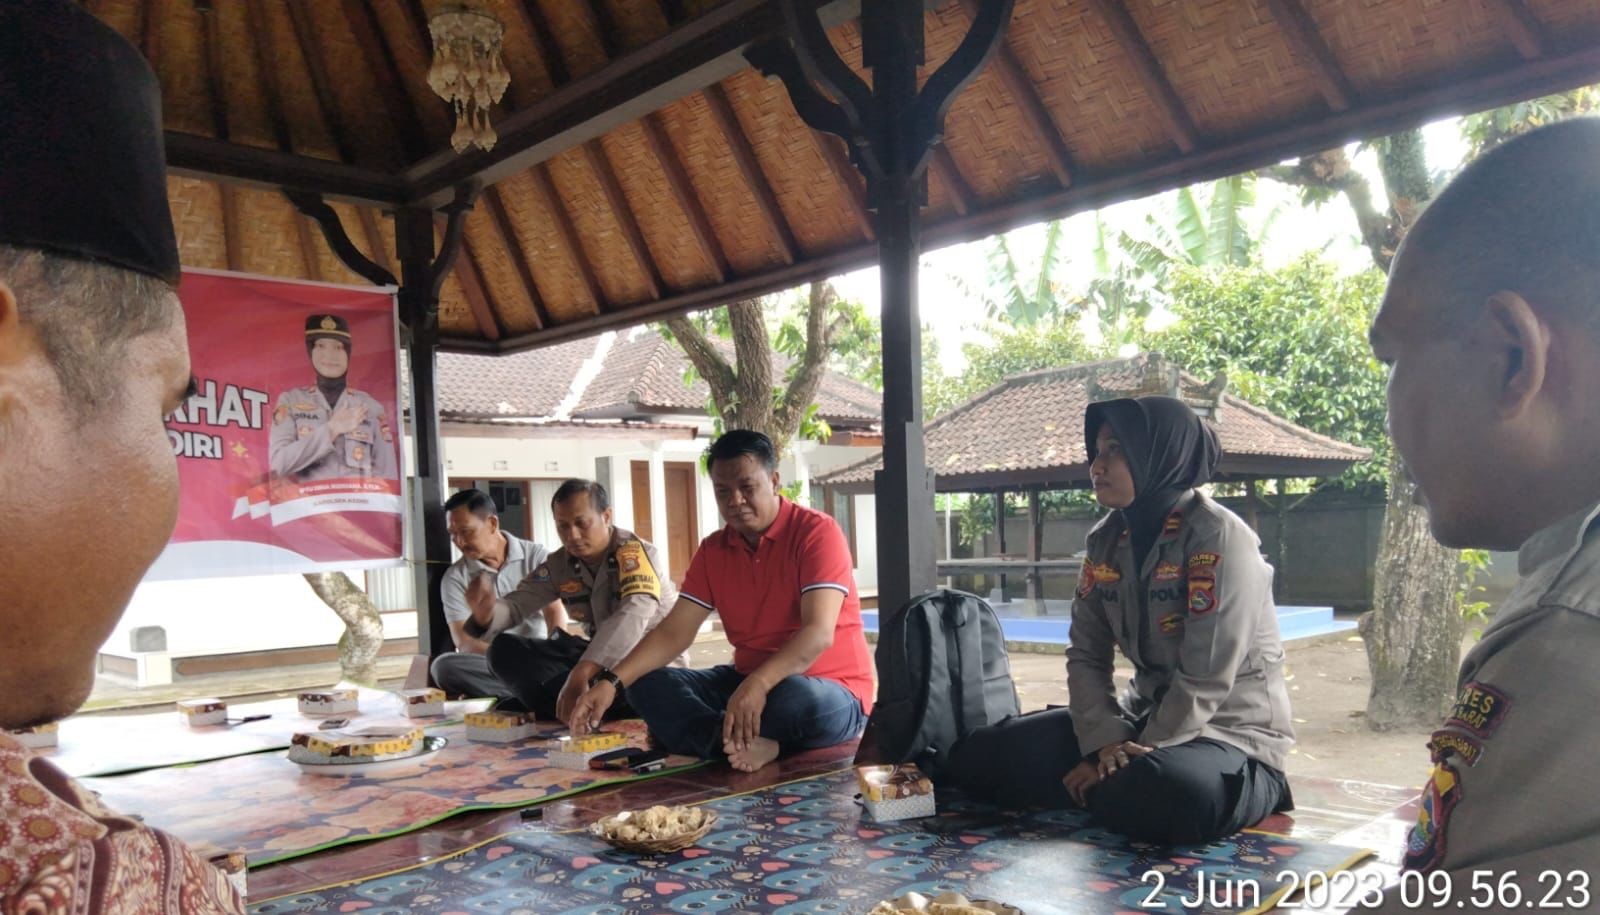 Kapolsek Kediri Buka Kegiatan Jumat Curhat, Jalin Kemitraan dengan Masyarakat Desa Jagaraga Indah